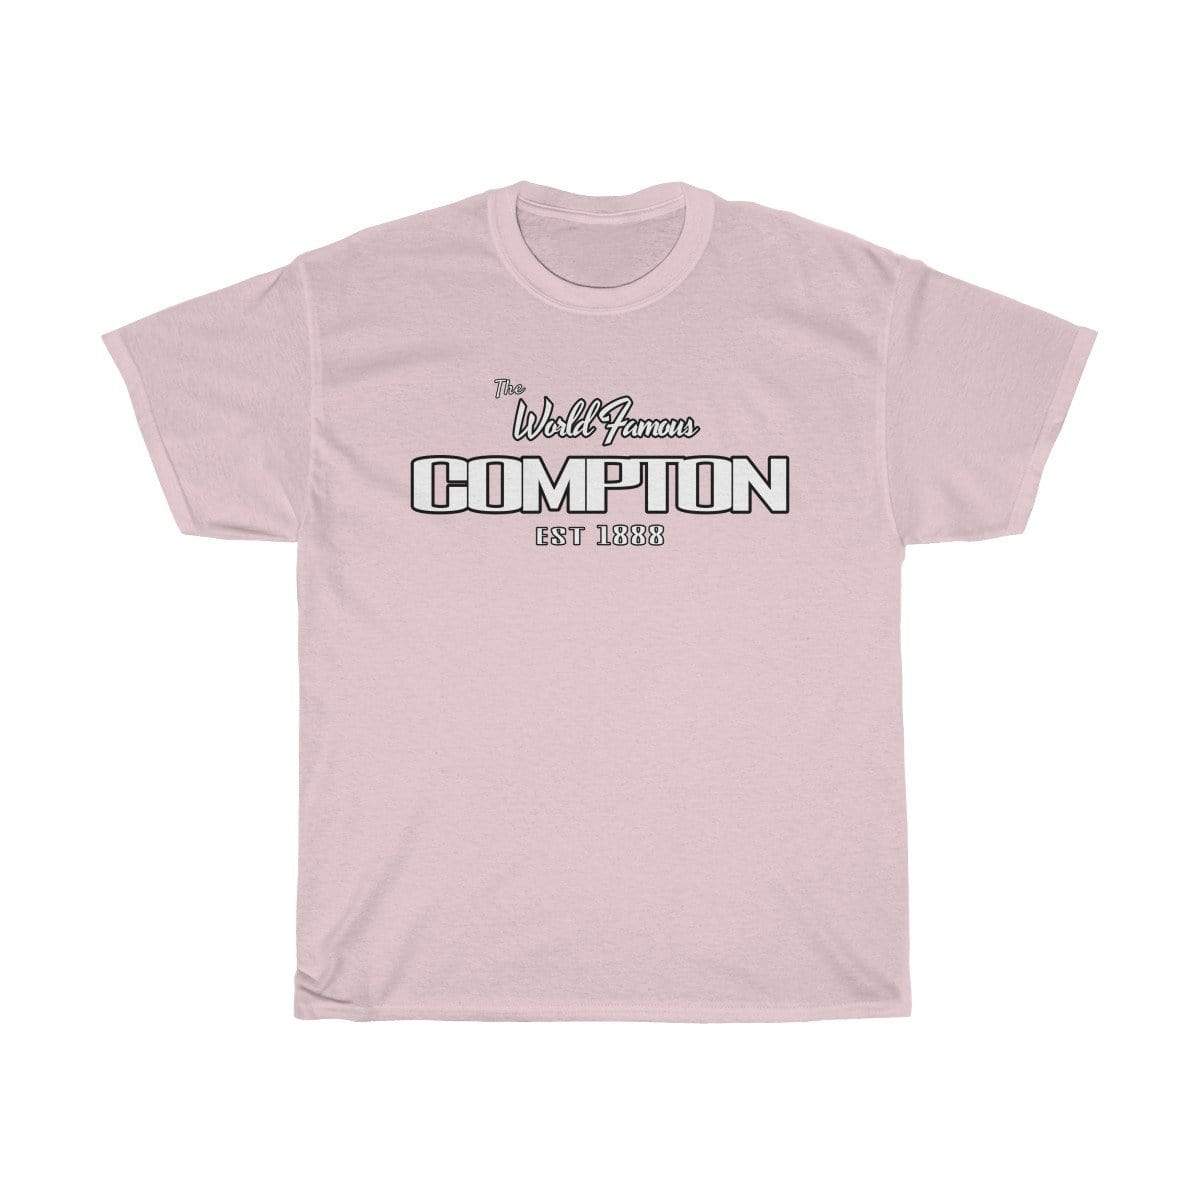 Plumskum T-Shirt Light Pink / S World Famous Compton EST. 1888 T-Shirt